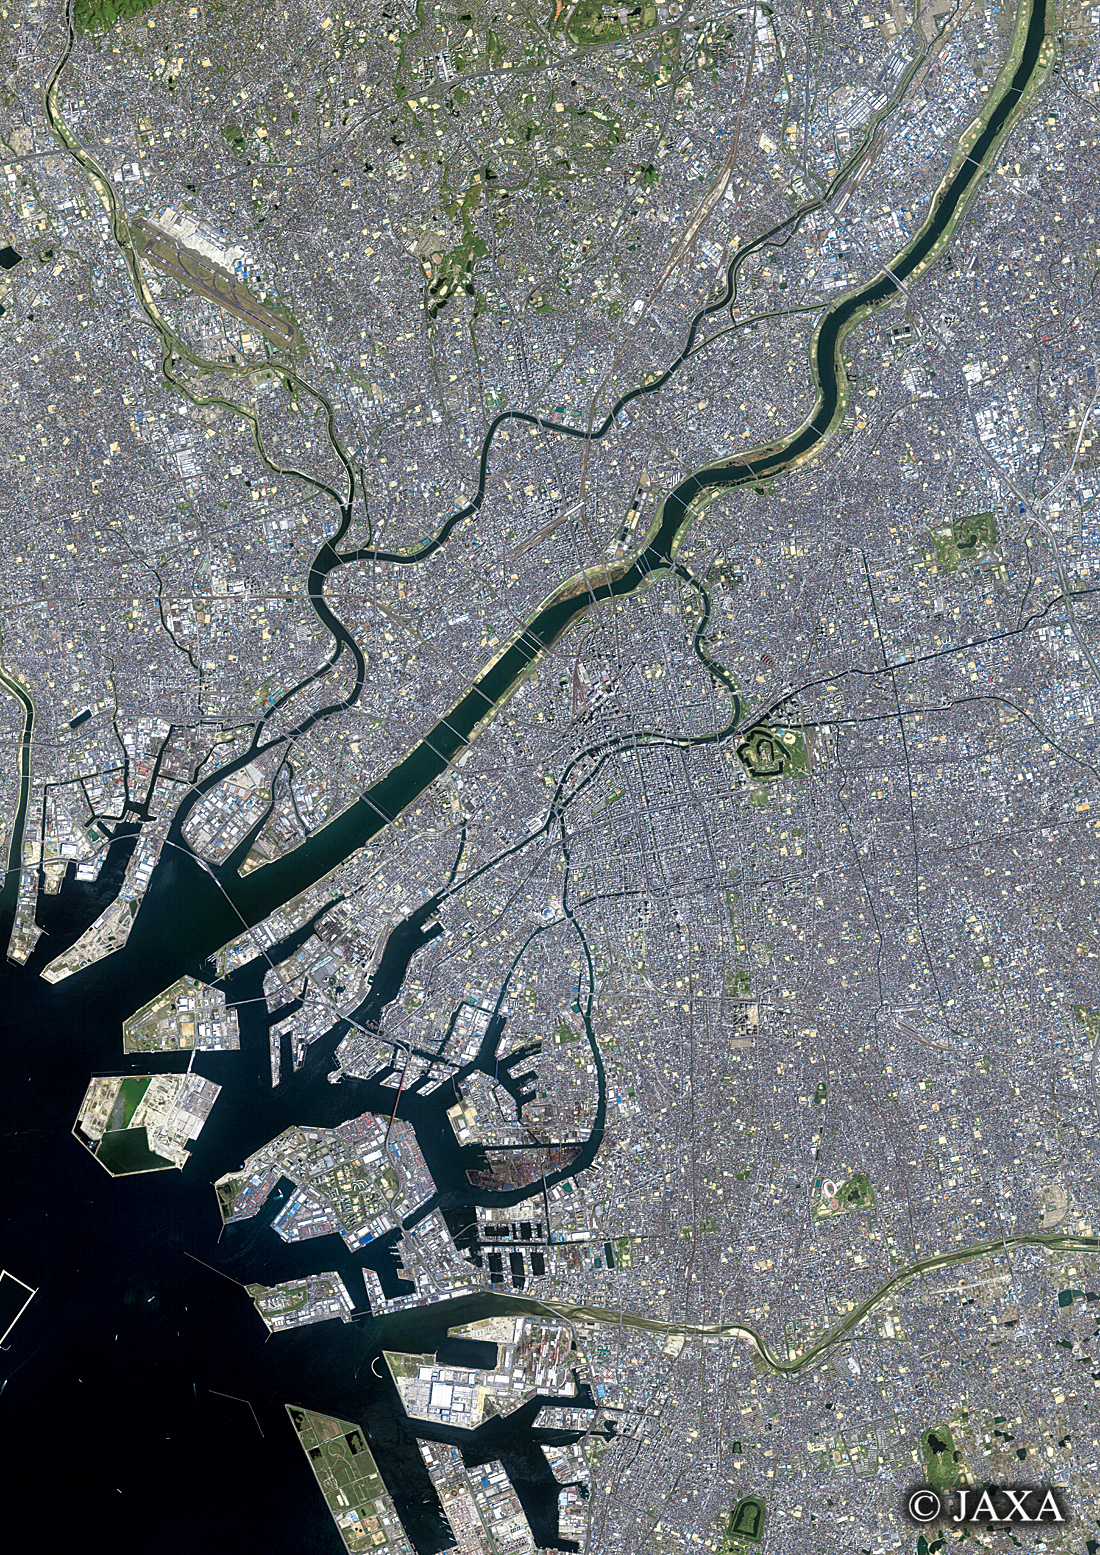 だいちから見た日本の都市 大阪市周辺地域:衛星画像